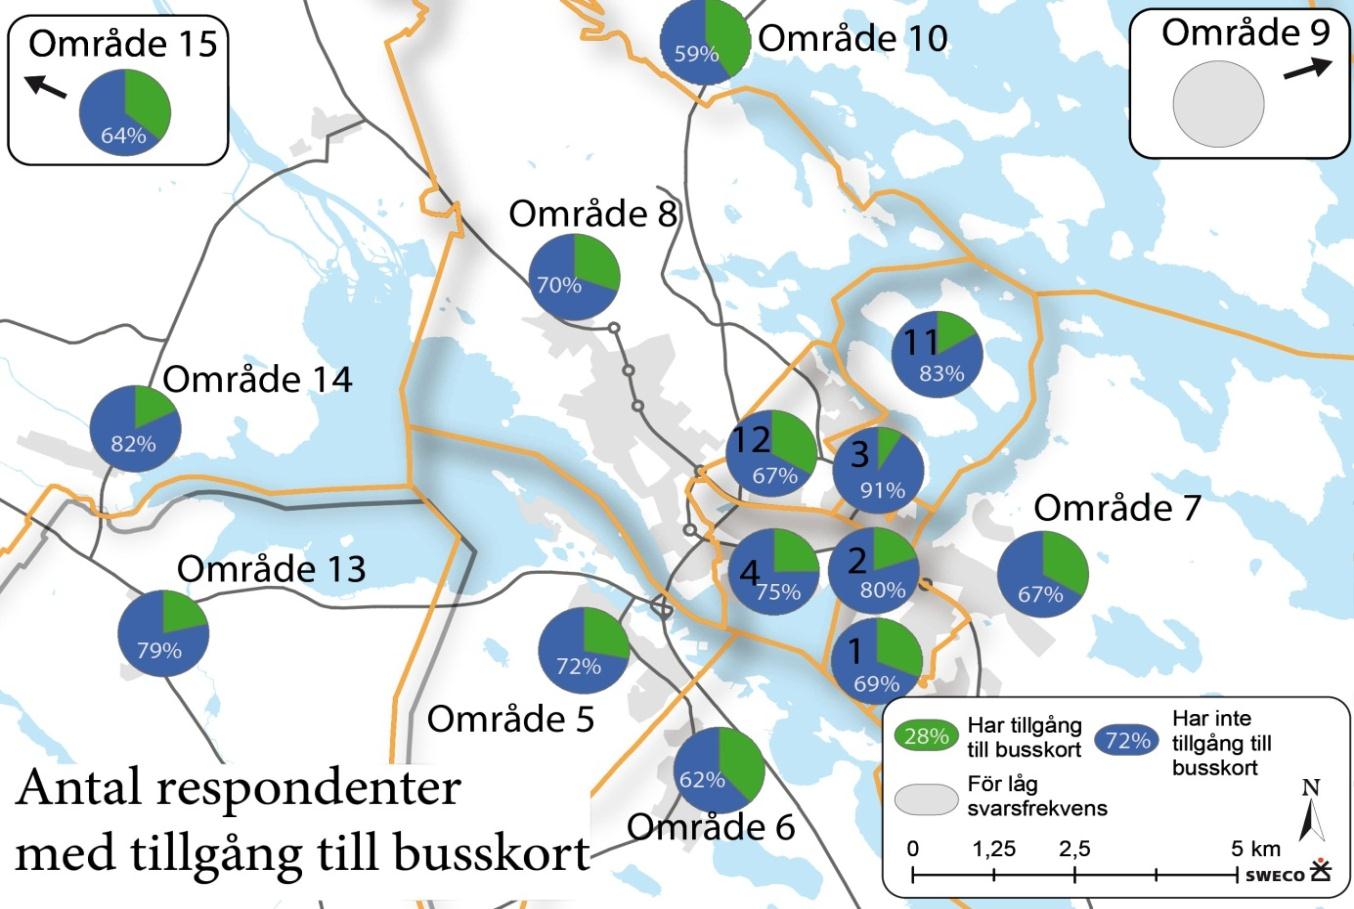 Tillgång till busskort i olika områden Något högre andel för områden längre ifrån centrala Piteå, men inga anmärkningsvärda